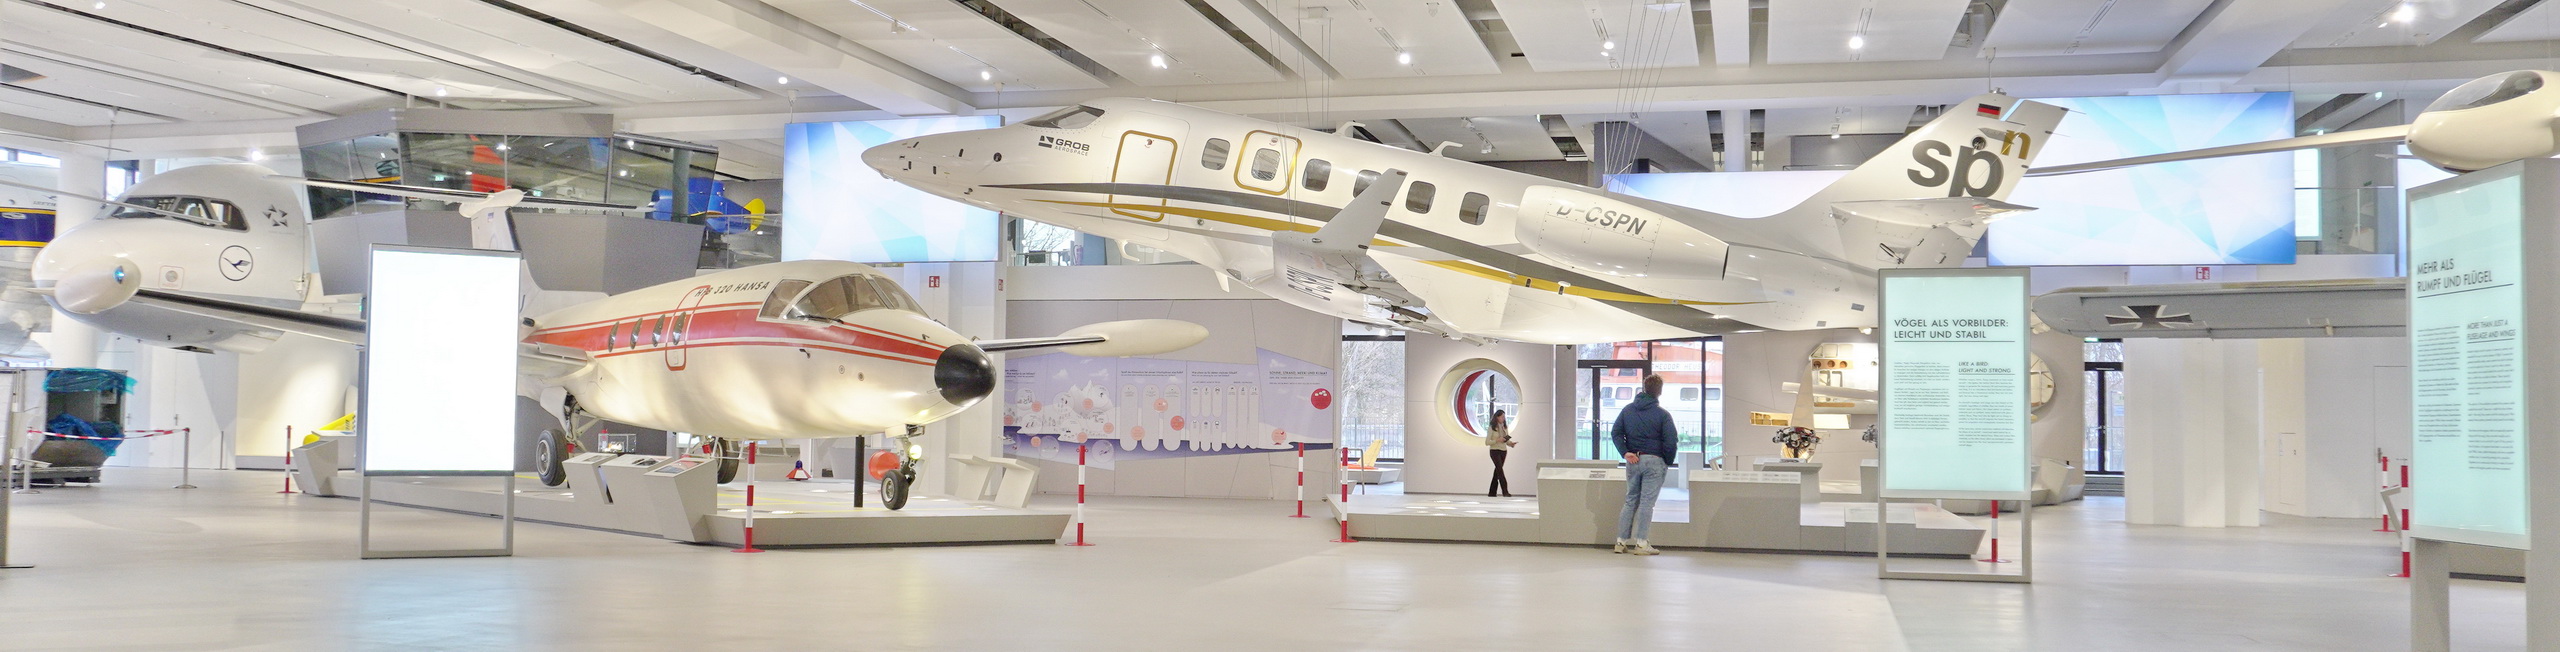 Bild Ausstellung Luftfahrt - Deutsches Museum, München